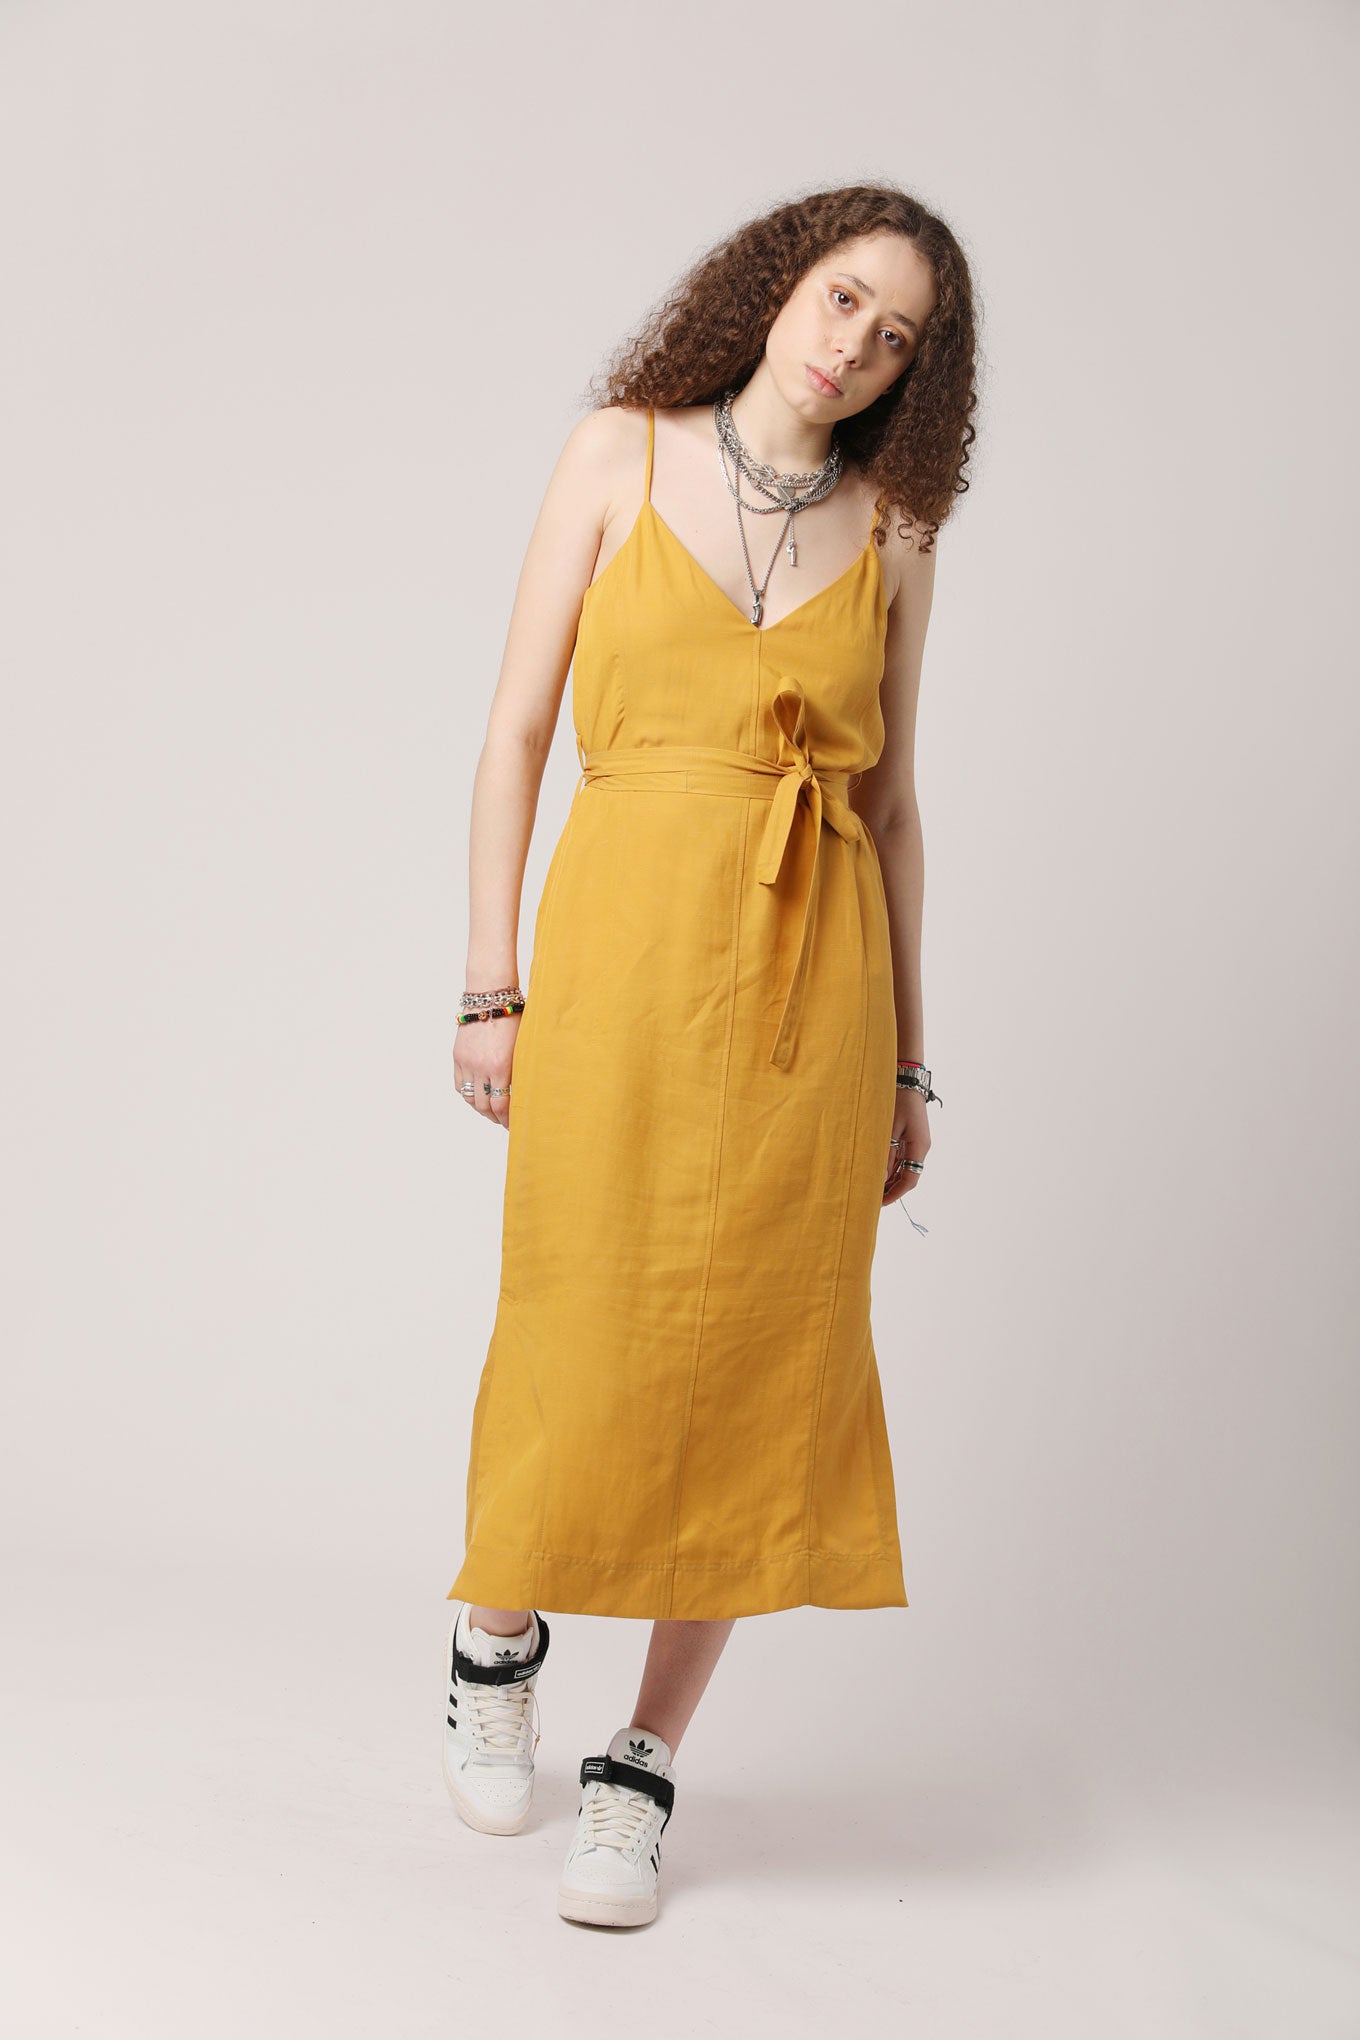 IMAN Tencel Linen Slip Dress Tangerine, SIZE 1 / UK 8 / EUR 36